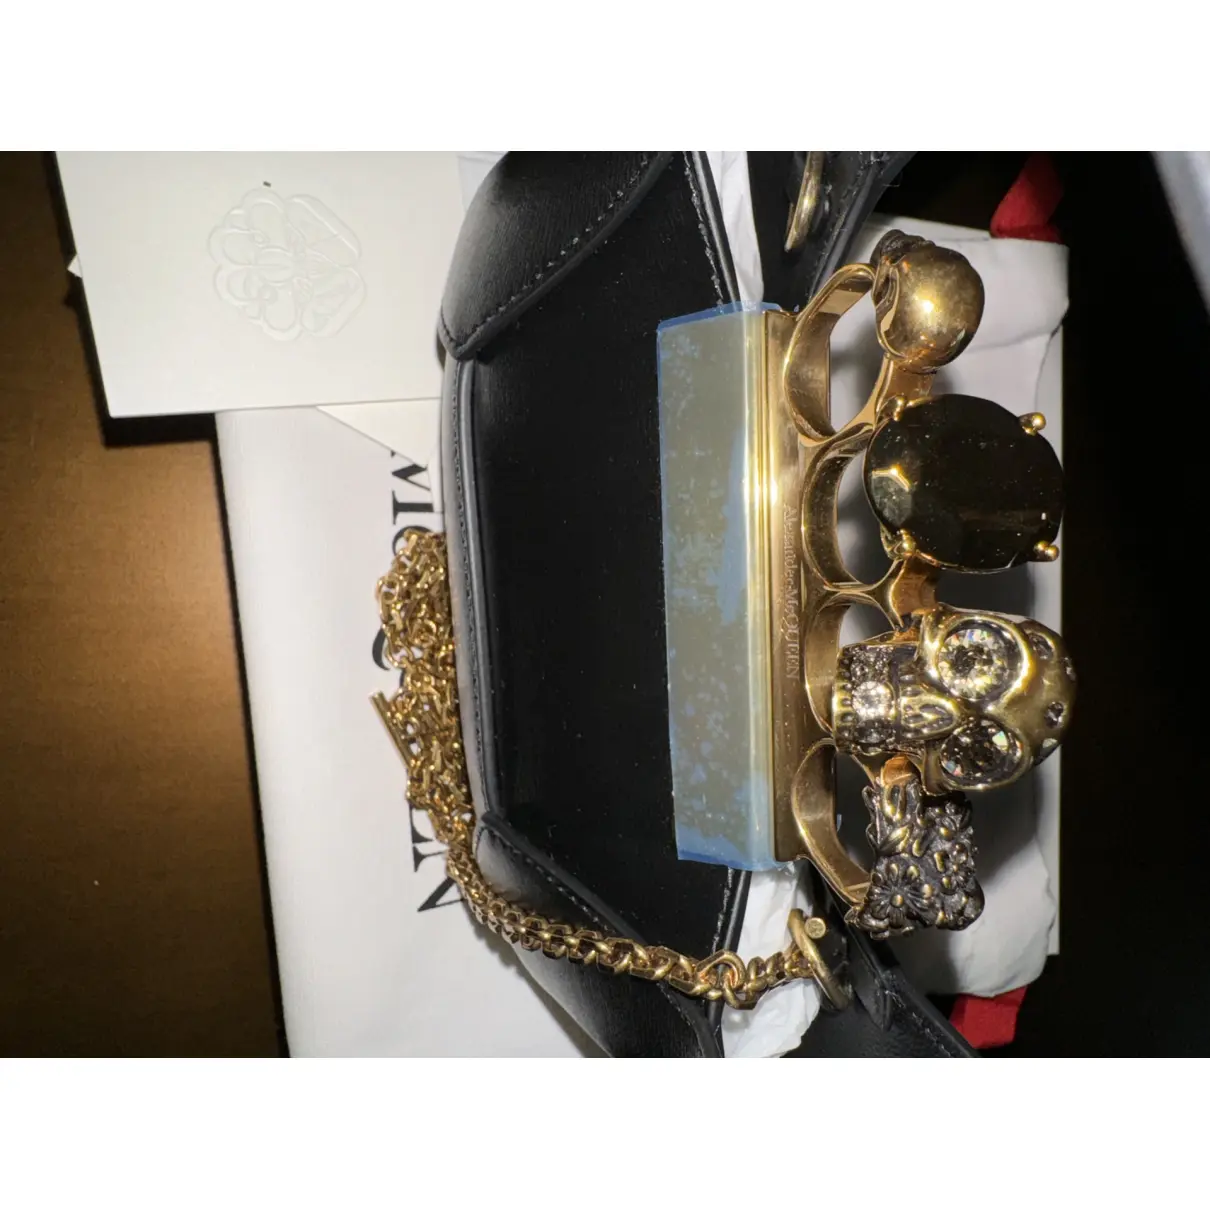 Skull leather handbag Alexander McQueen